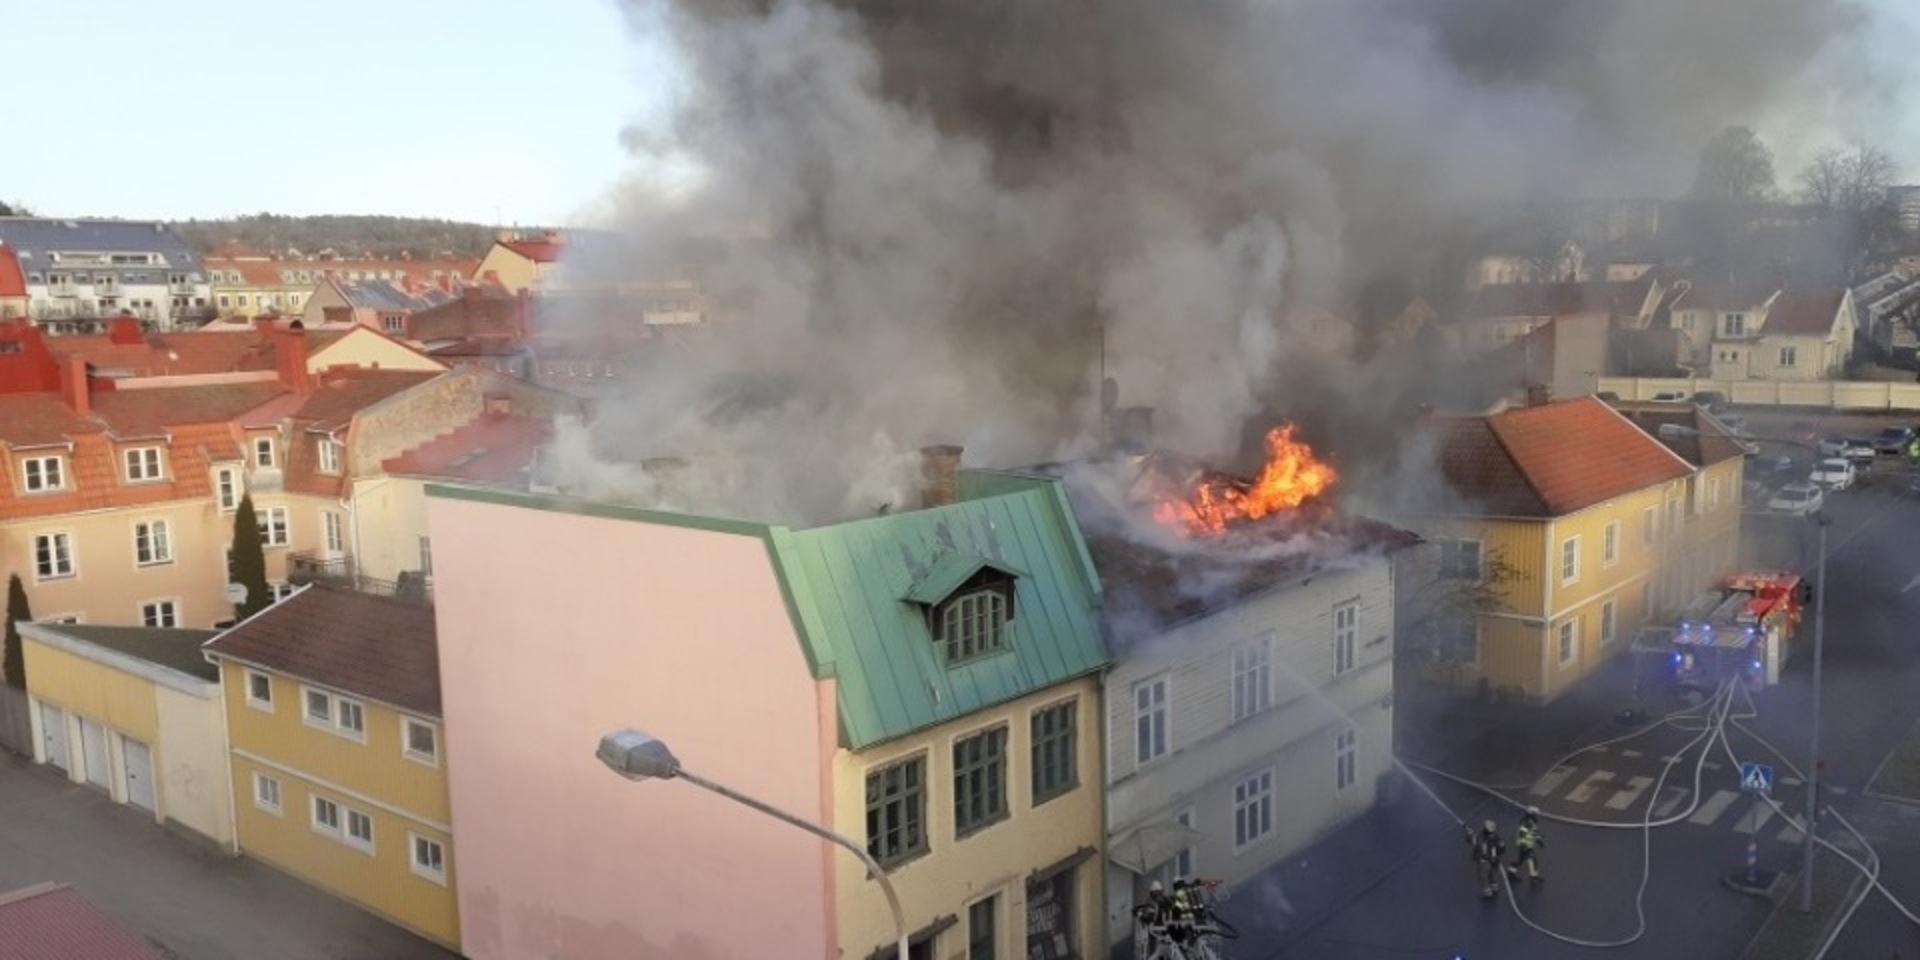 En häftig brand rasade i ett trähus i centrala Uddevalla på onsdagen. En kraftig röklukt spred sig över centrala staden och människor i området uppmanades att hålla sig inomhus.